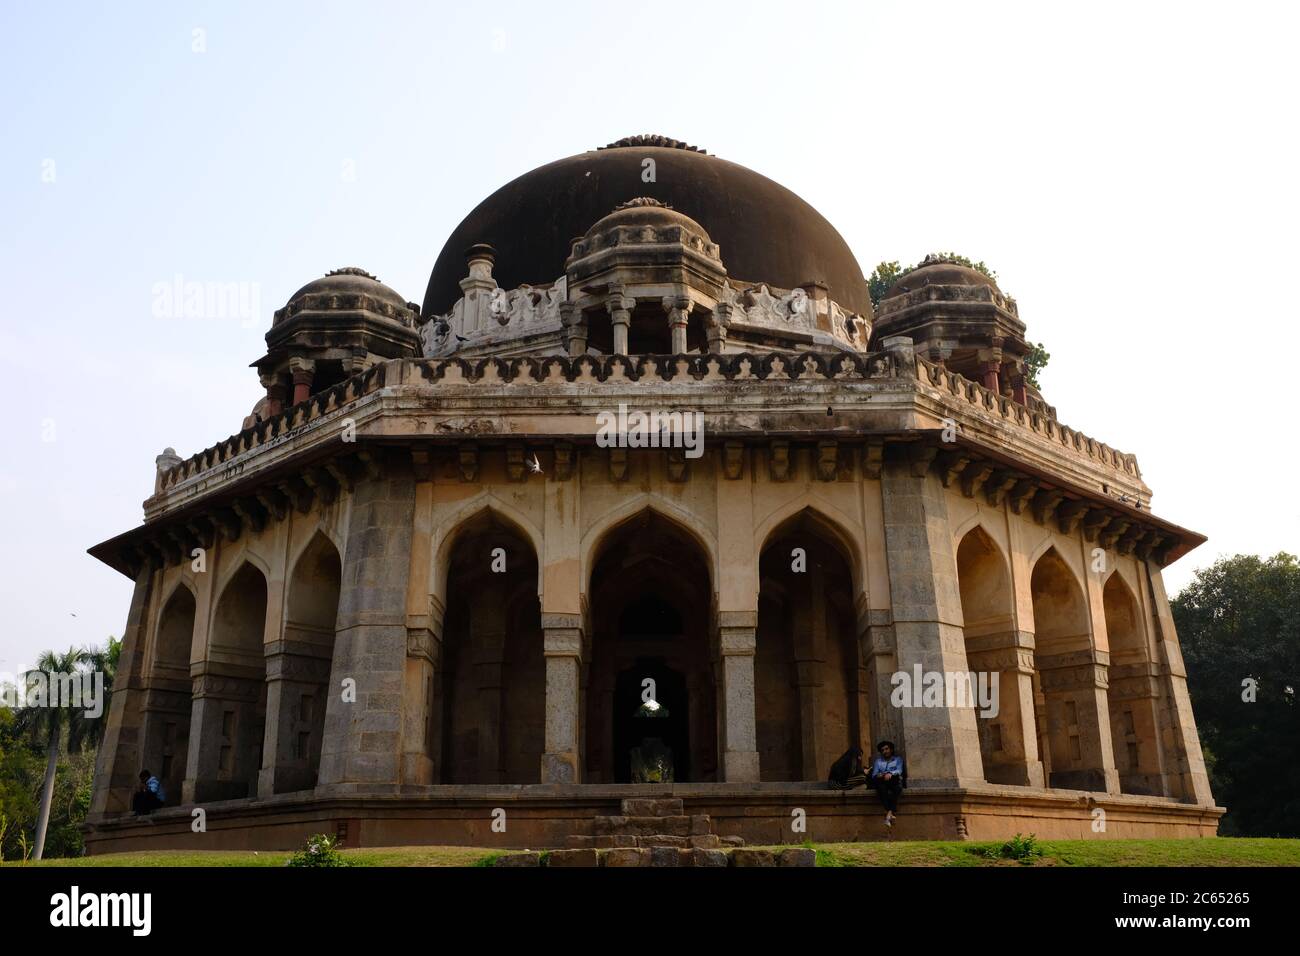 The tomb of Muhammad Shah Sayyid, Lodhi Garden Delhi, India Stock Photo